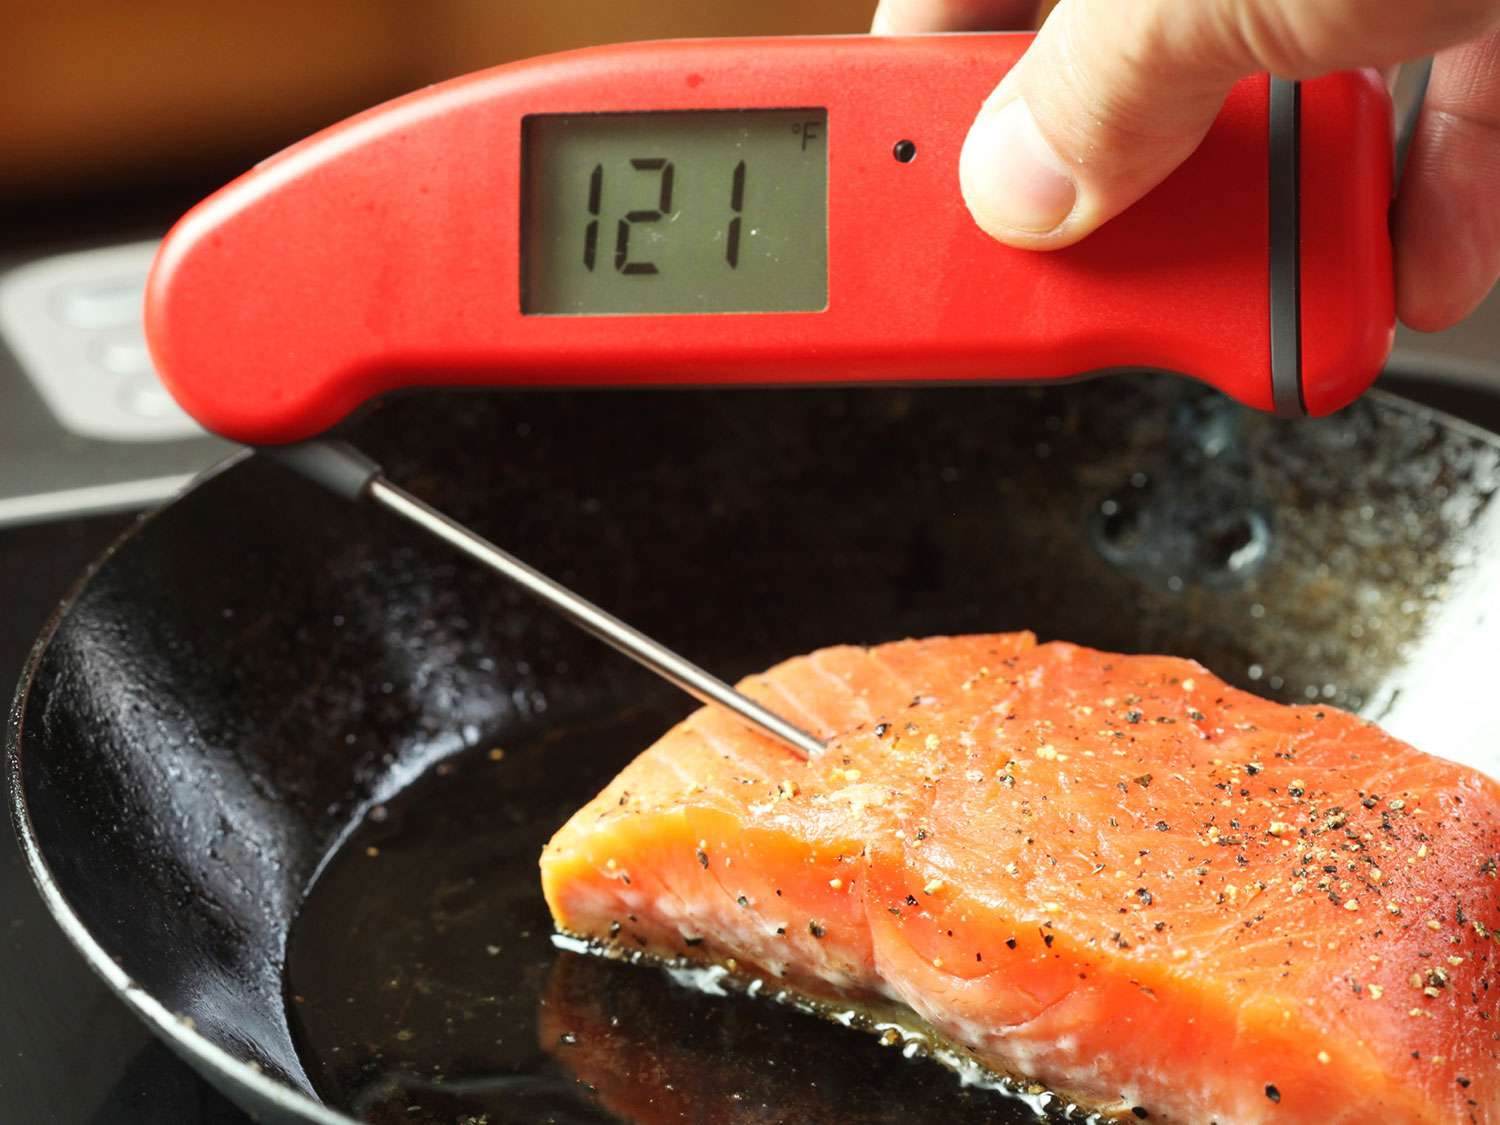 使用即时读数温度计可以看到烤鲑鱼片的内部温度是华氏121度。